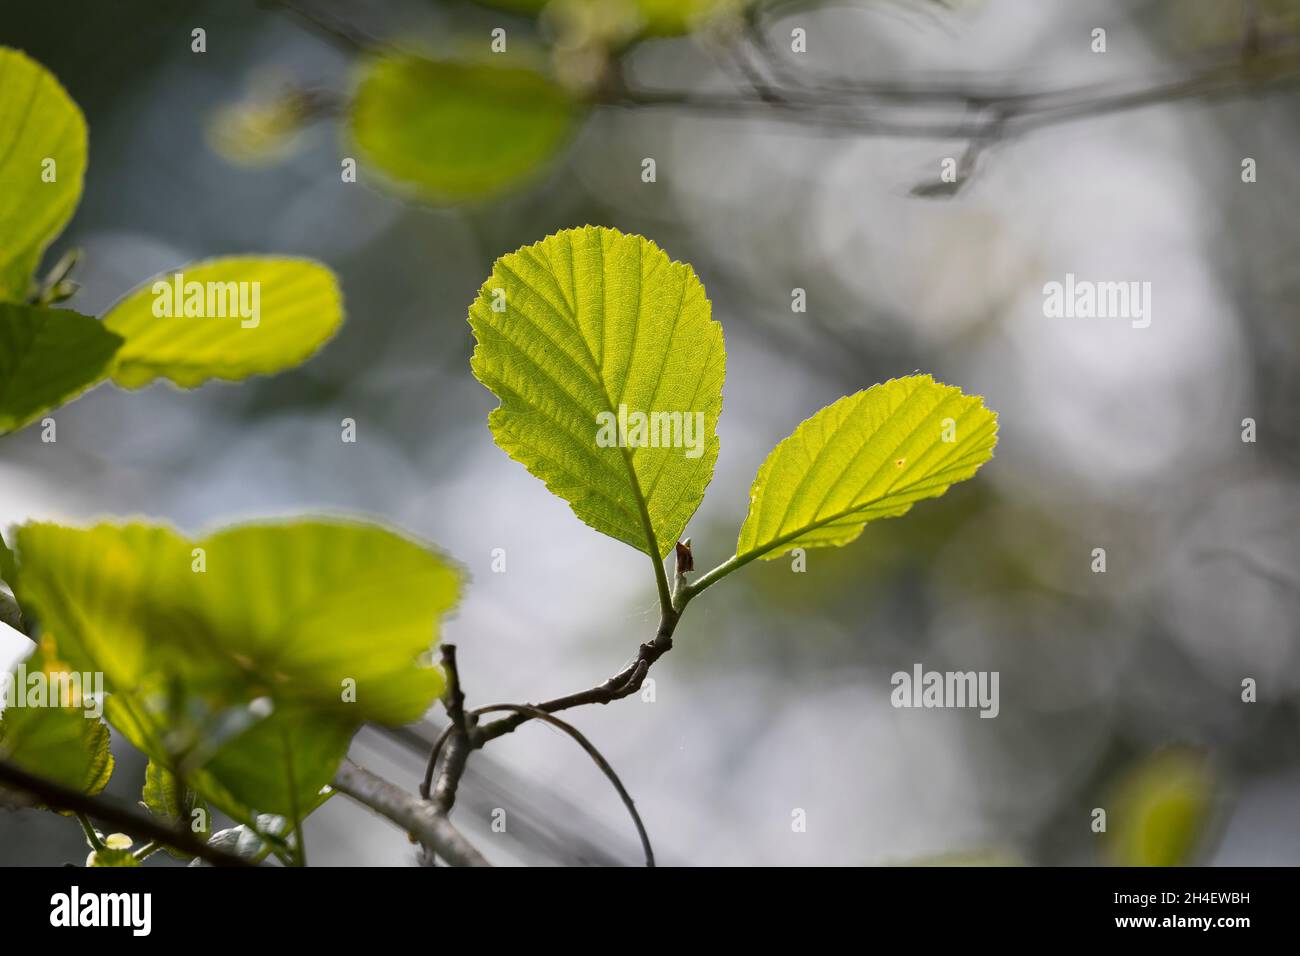 Schwarz-Erle, Schwarzerle, Erle, Alnus glutinosa, Common Alder, Alder, Aulne glutineux. Blatt, Blätter, leaf, leaves Stock Photo